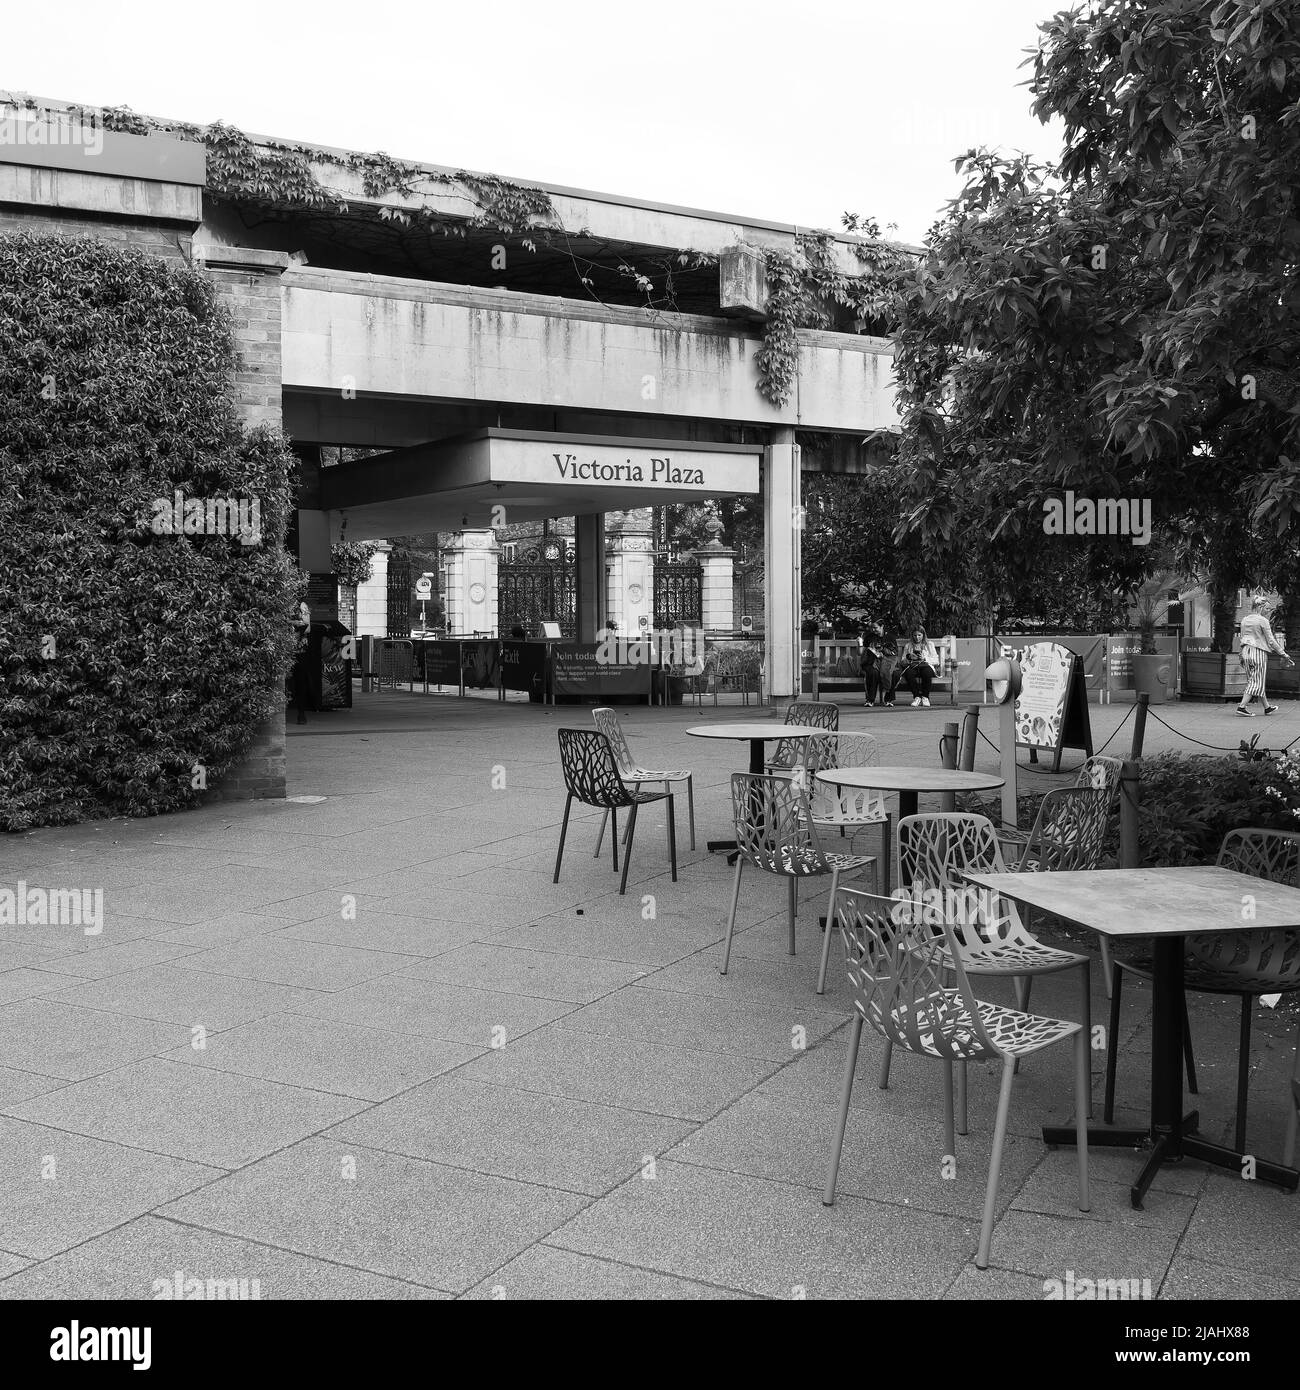 Richmond, Grand Londres, Angleterre, 18 mai 2022: Jardins botaniques royaux Kew. Entrée Victoria Plaza avec table de café et chaises. Monochrome. Banque D'Images